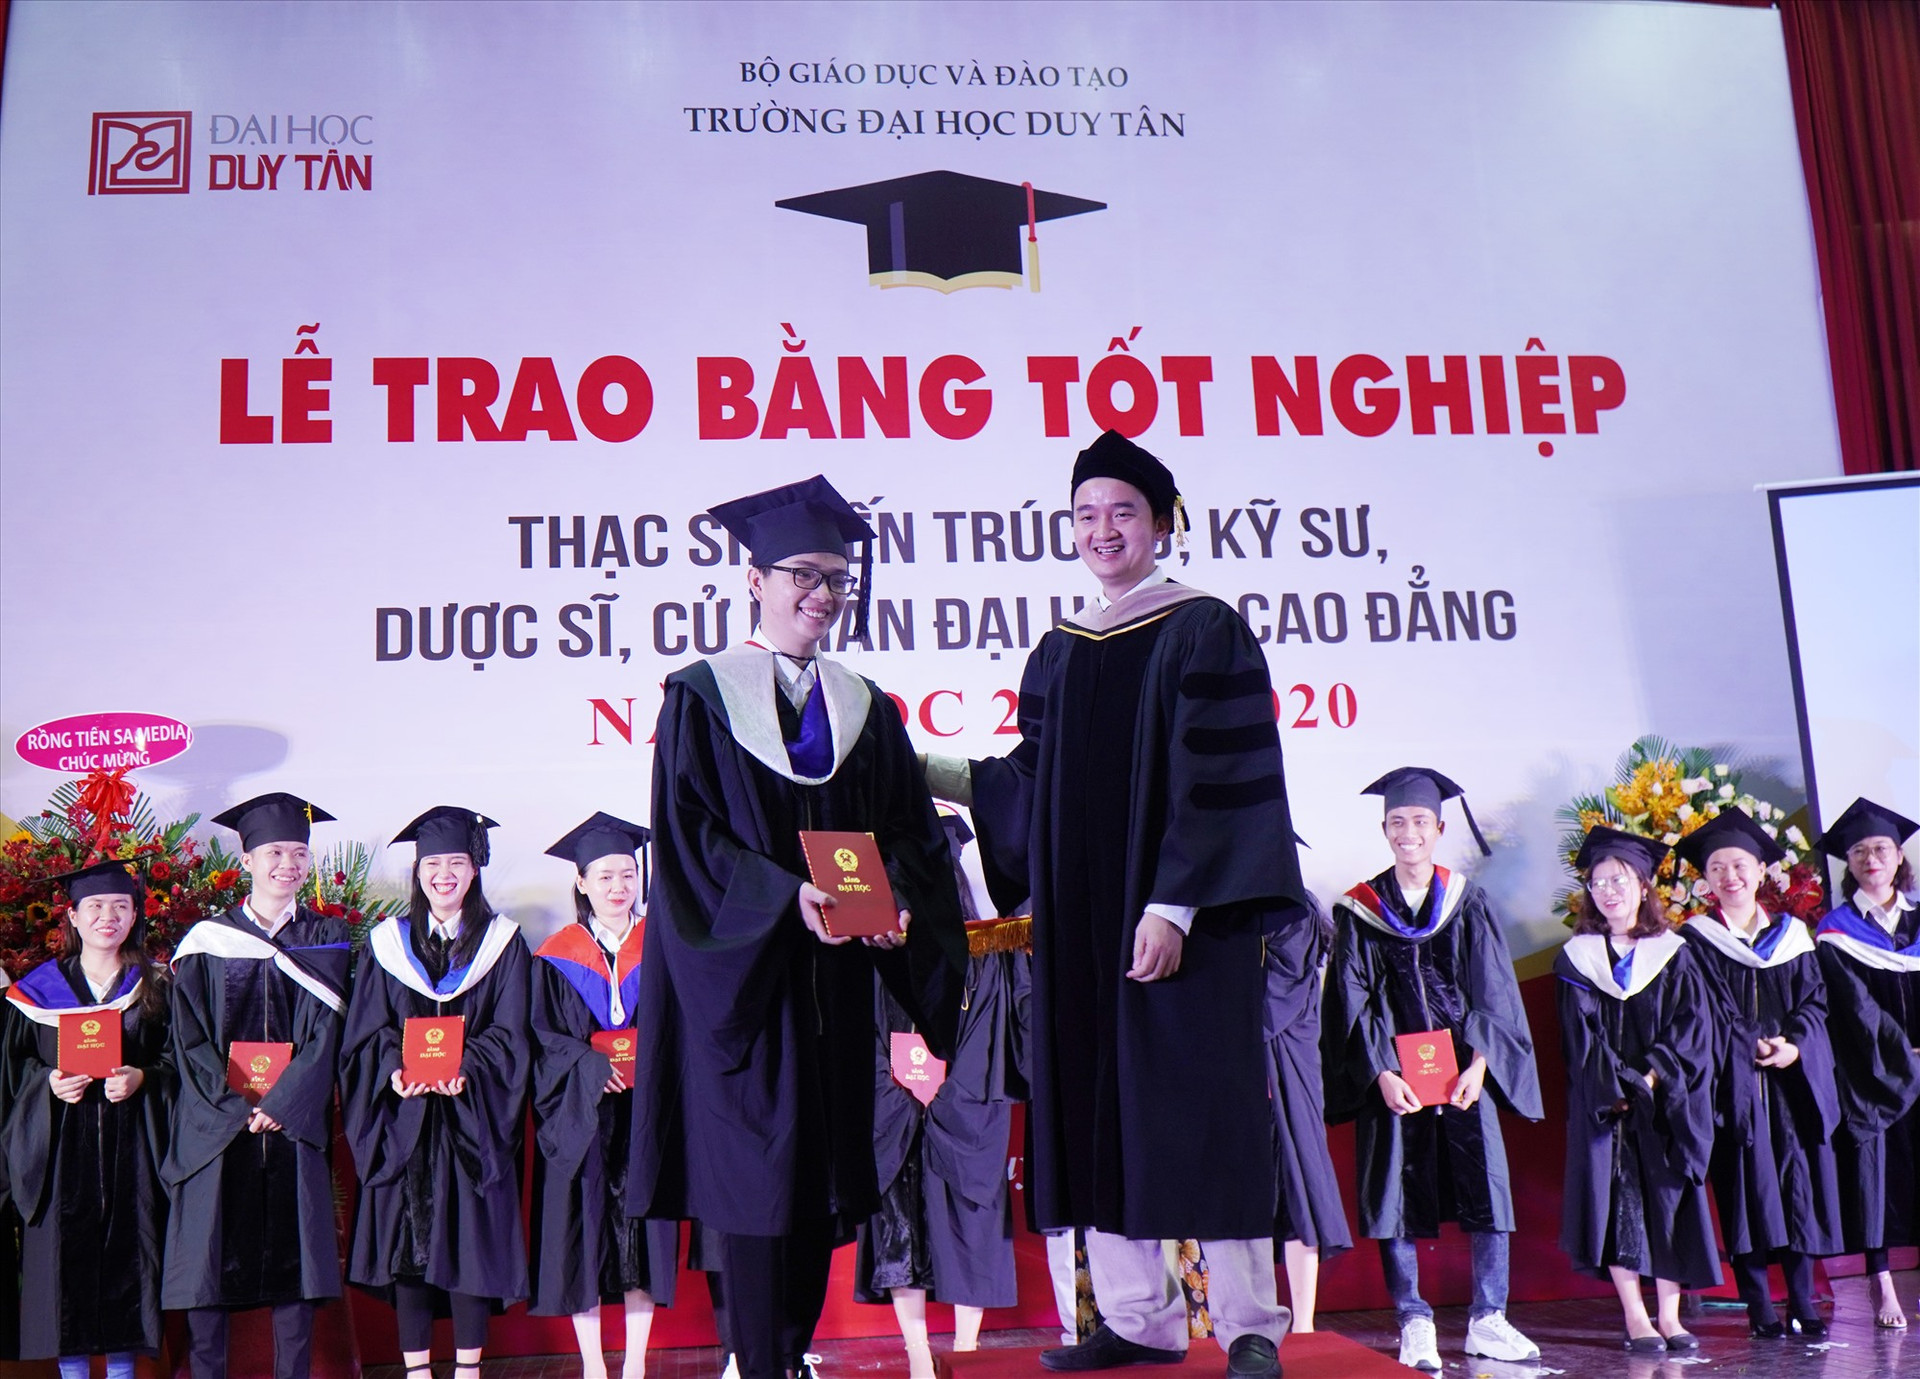 TS.Lê Nguyên Bảo - Hiệu trưởng DTU trao bằng cho sinh viên tốt nghiệp năm 2020. Ảnh: N.T.B